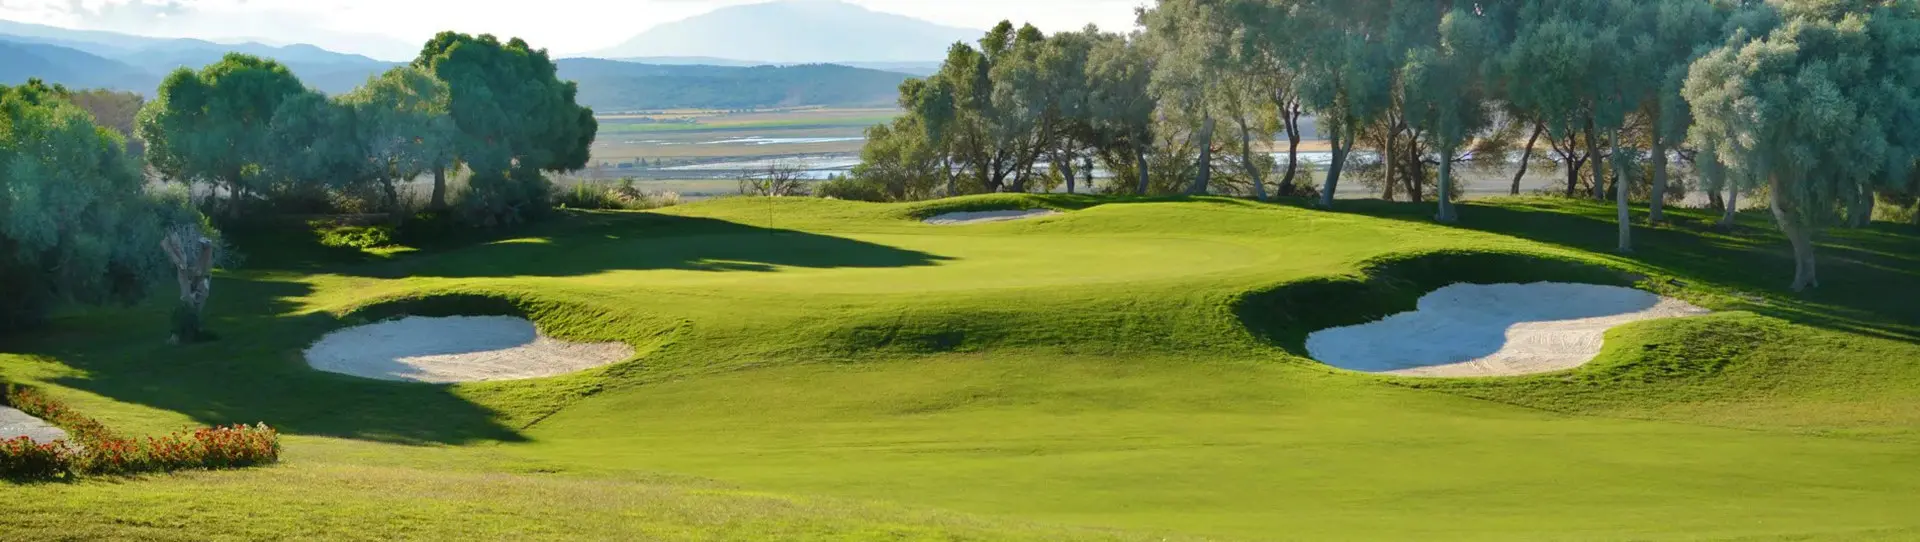 Spain golf courses - Fairplay Golf Course - Photo 1